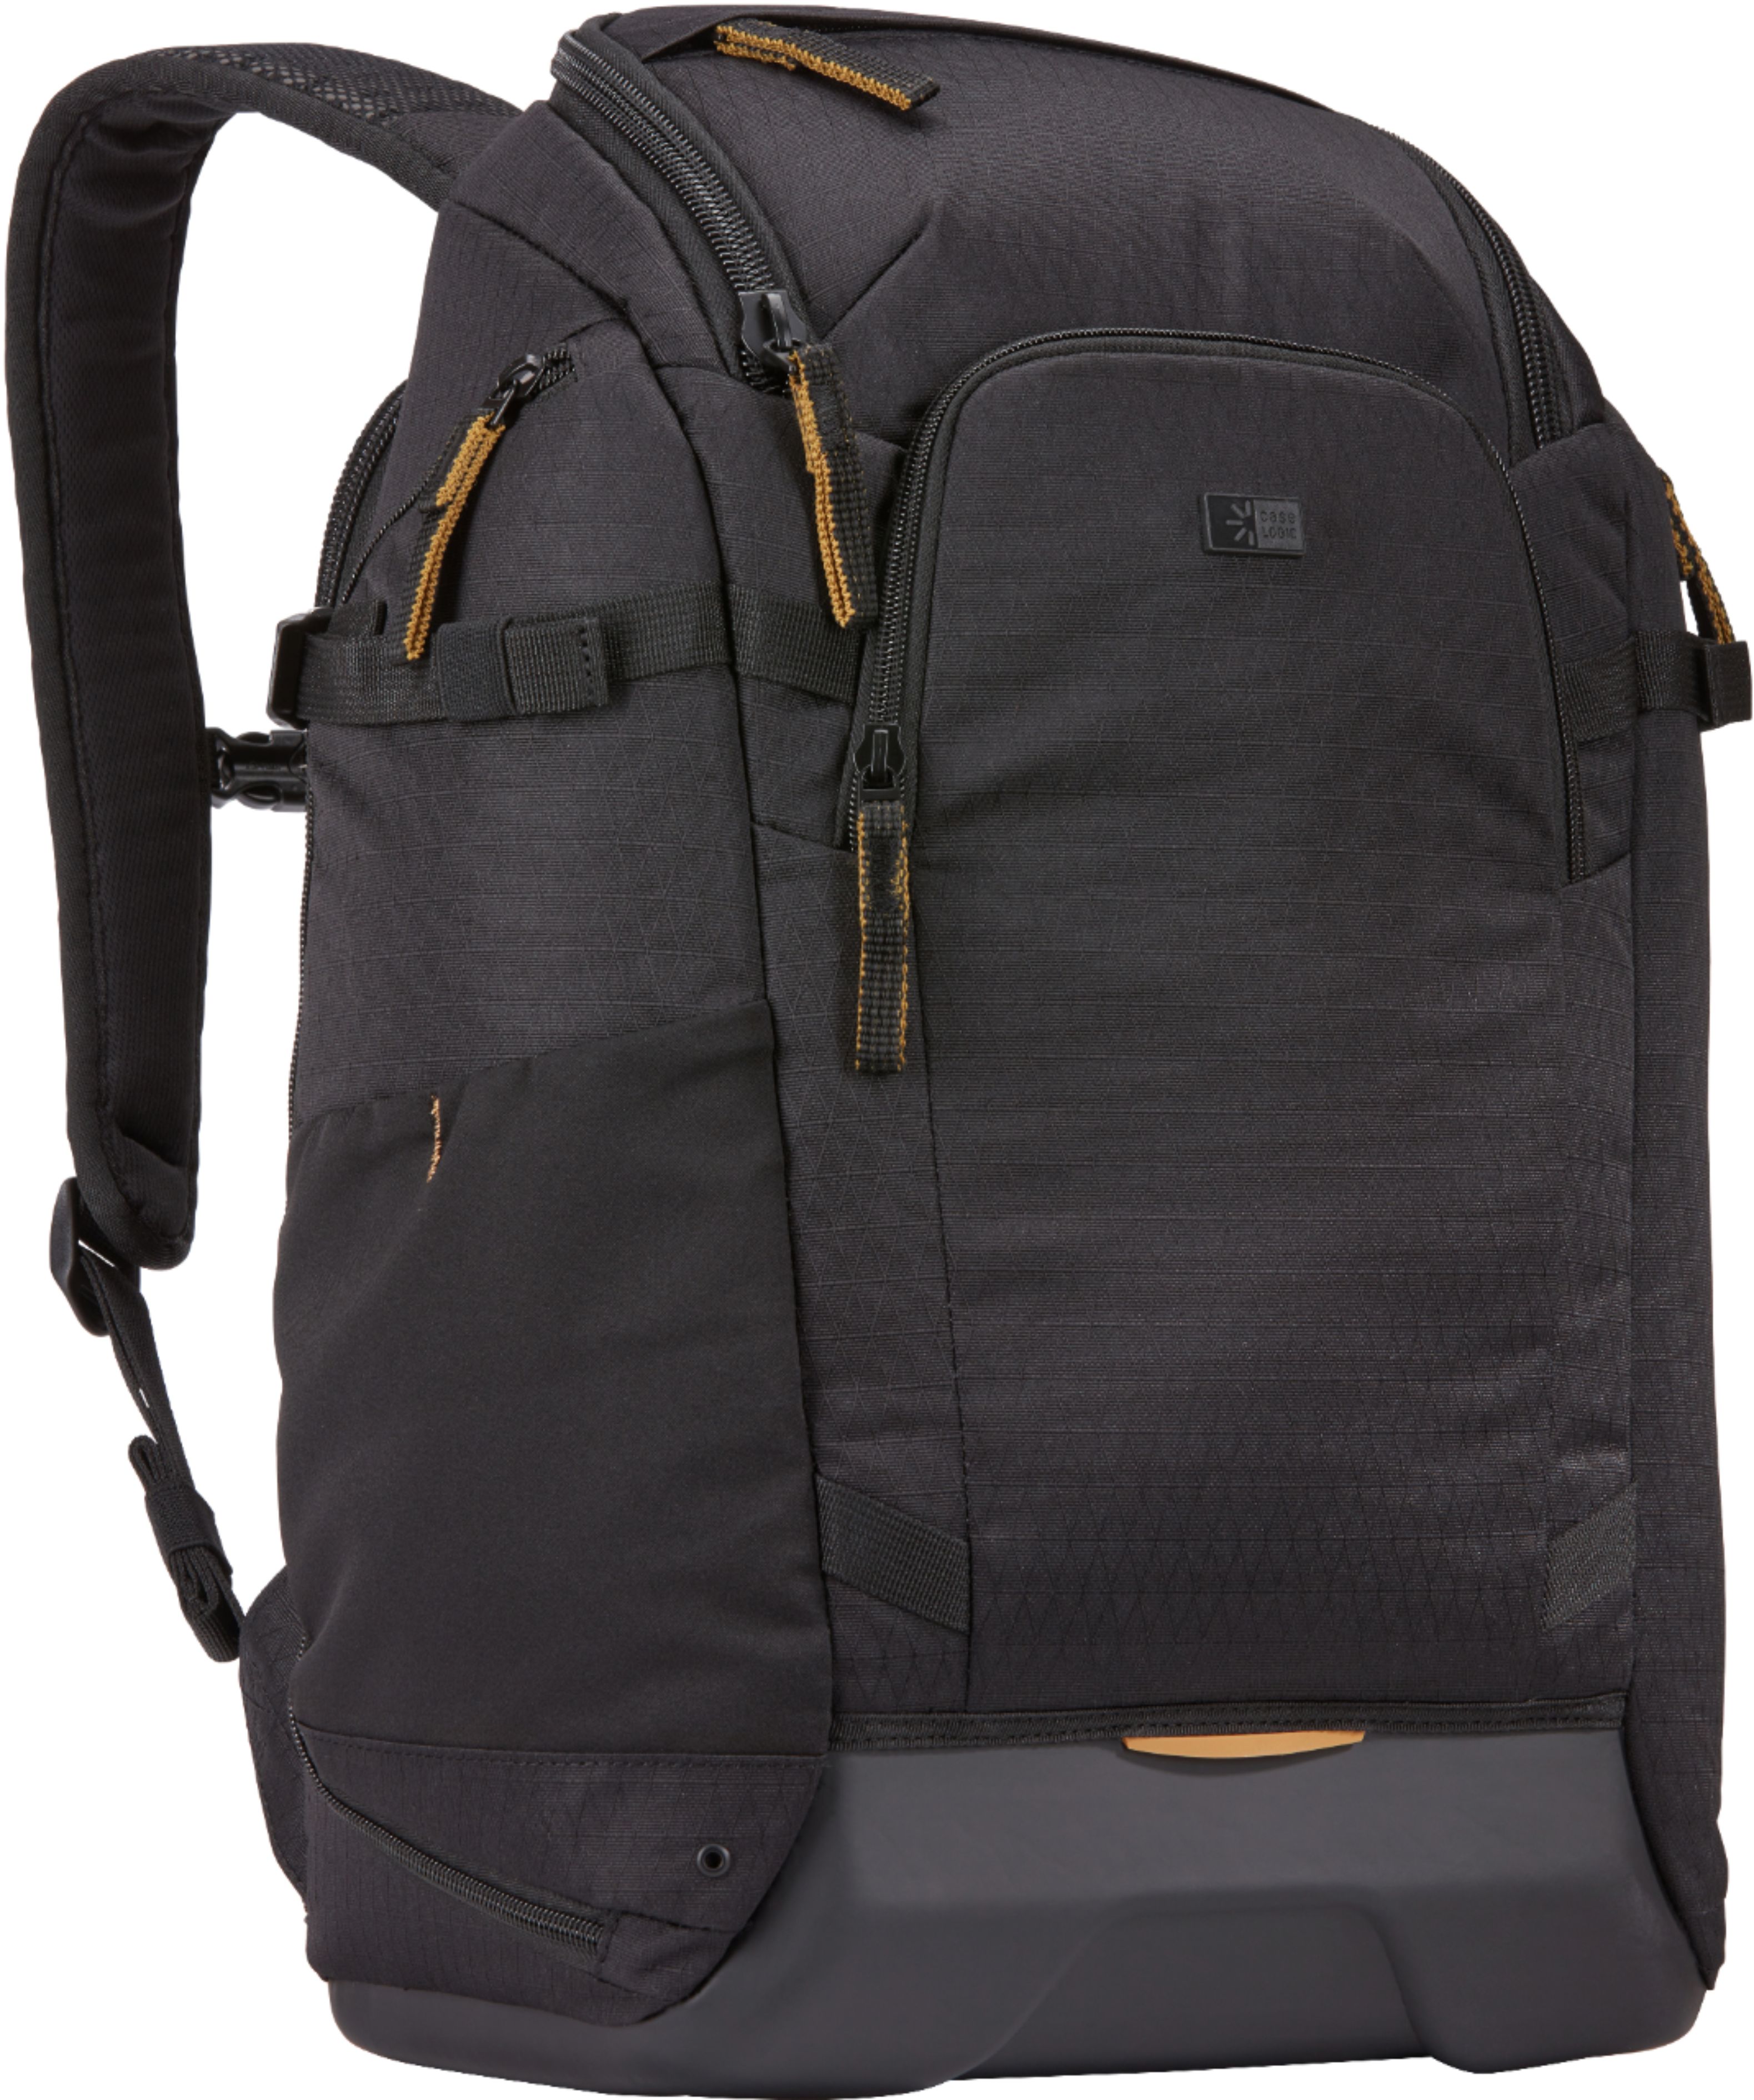 Left View: Peak Design - Everyday Backpack V2 20L - Ash